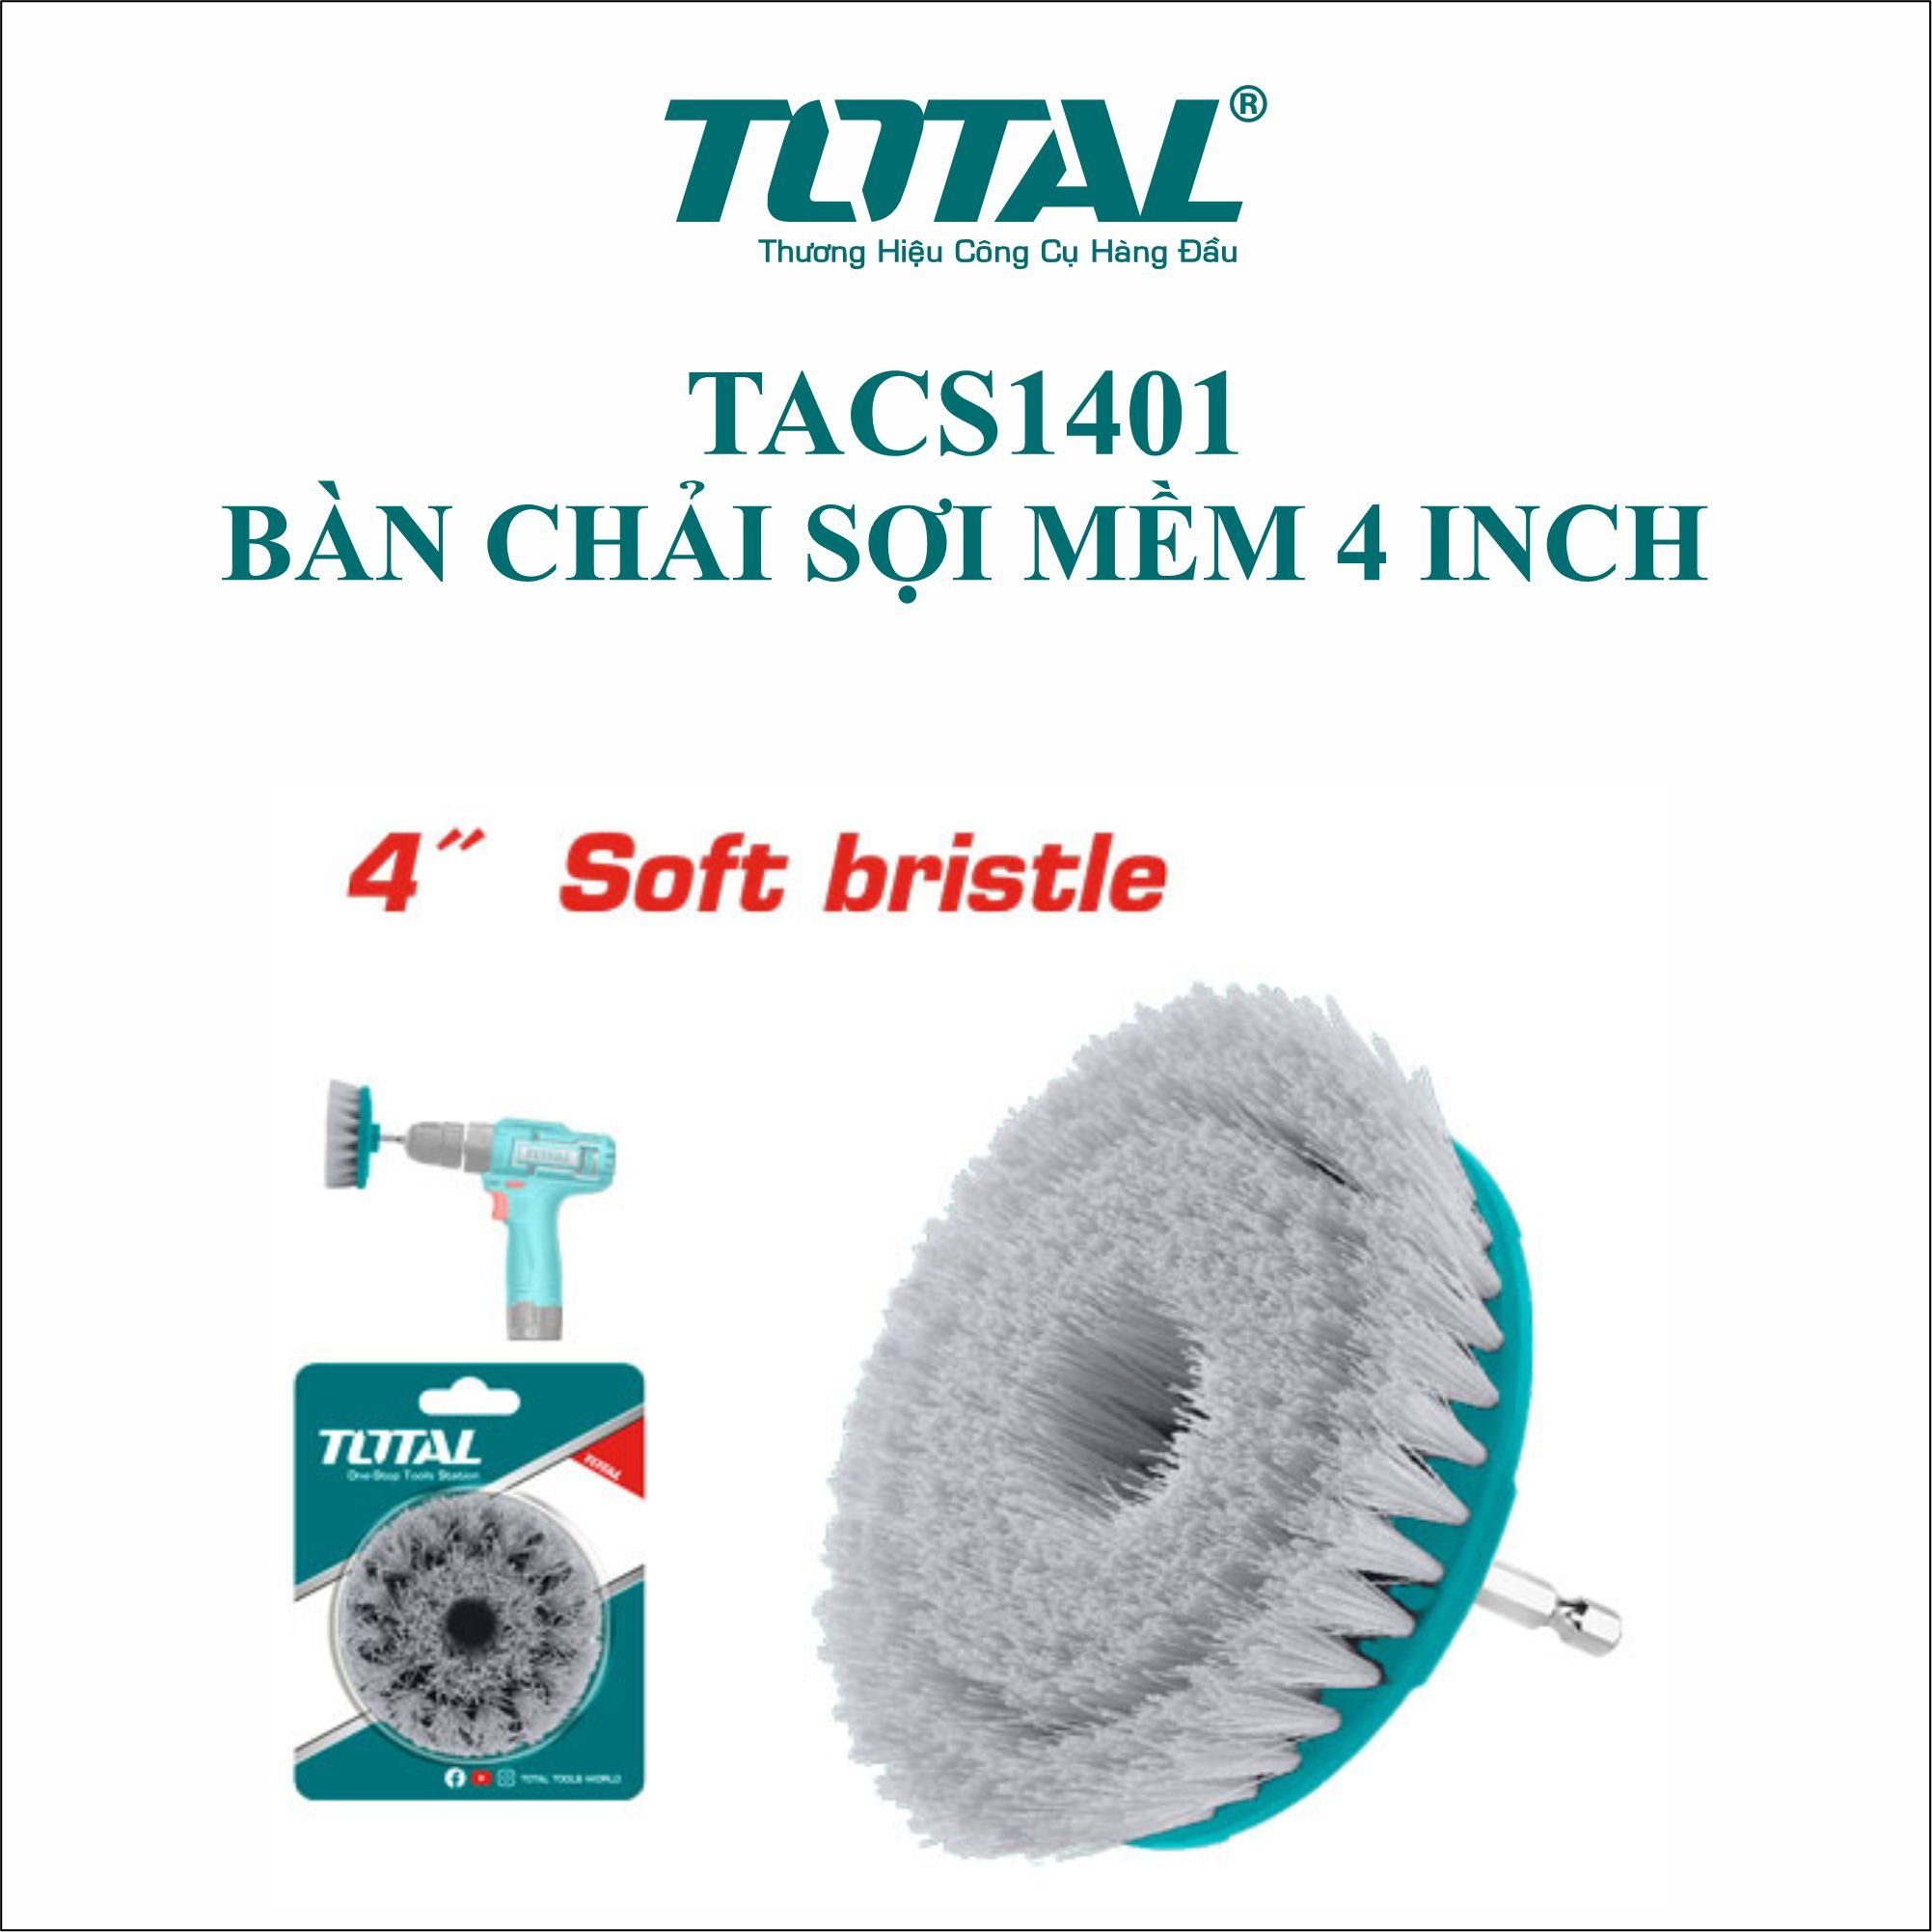  Bàn chải sợi mềm 4 inch Total TACS1401 